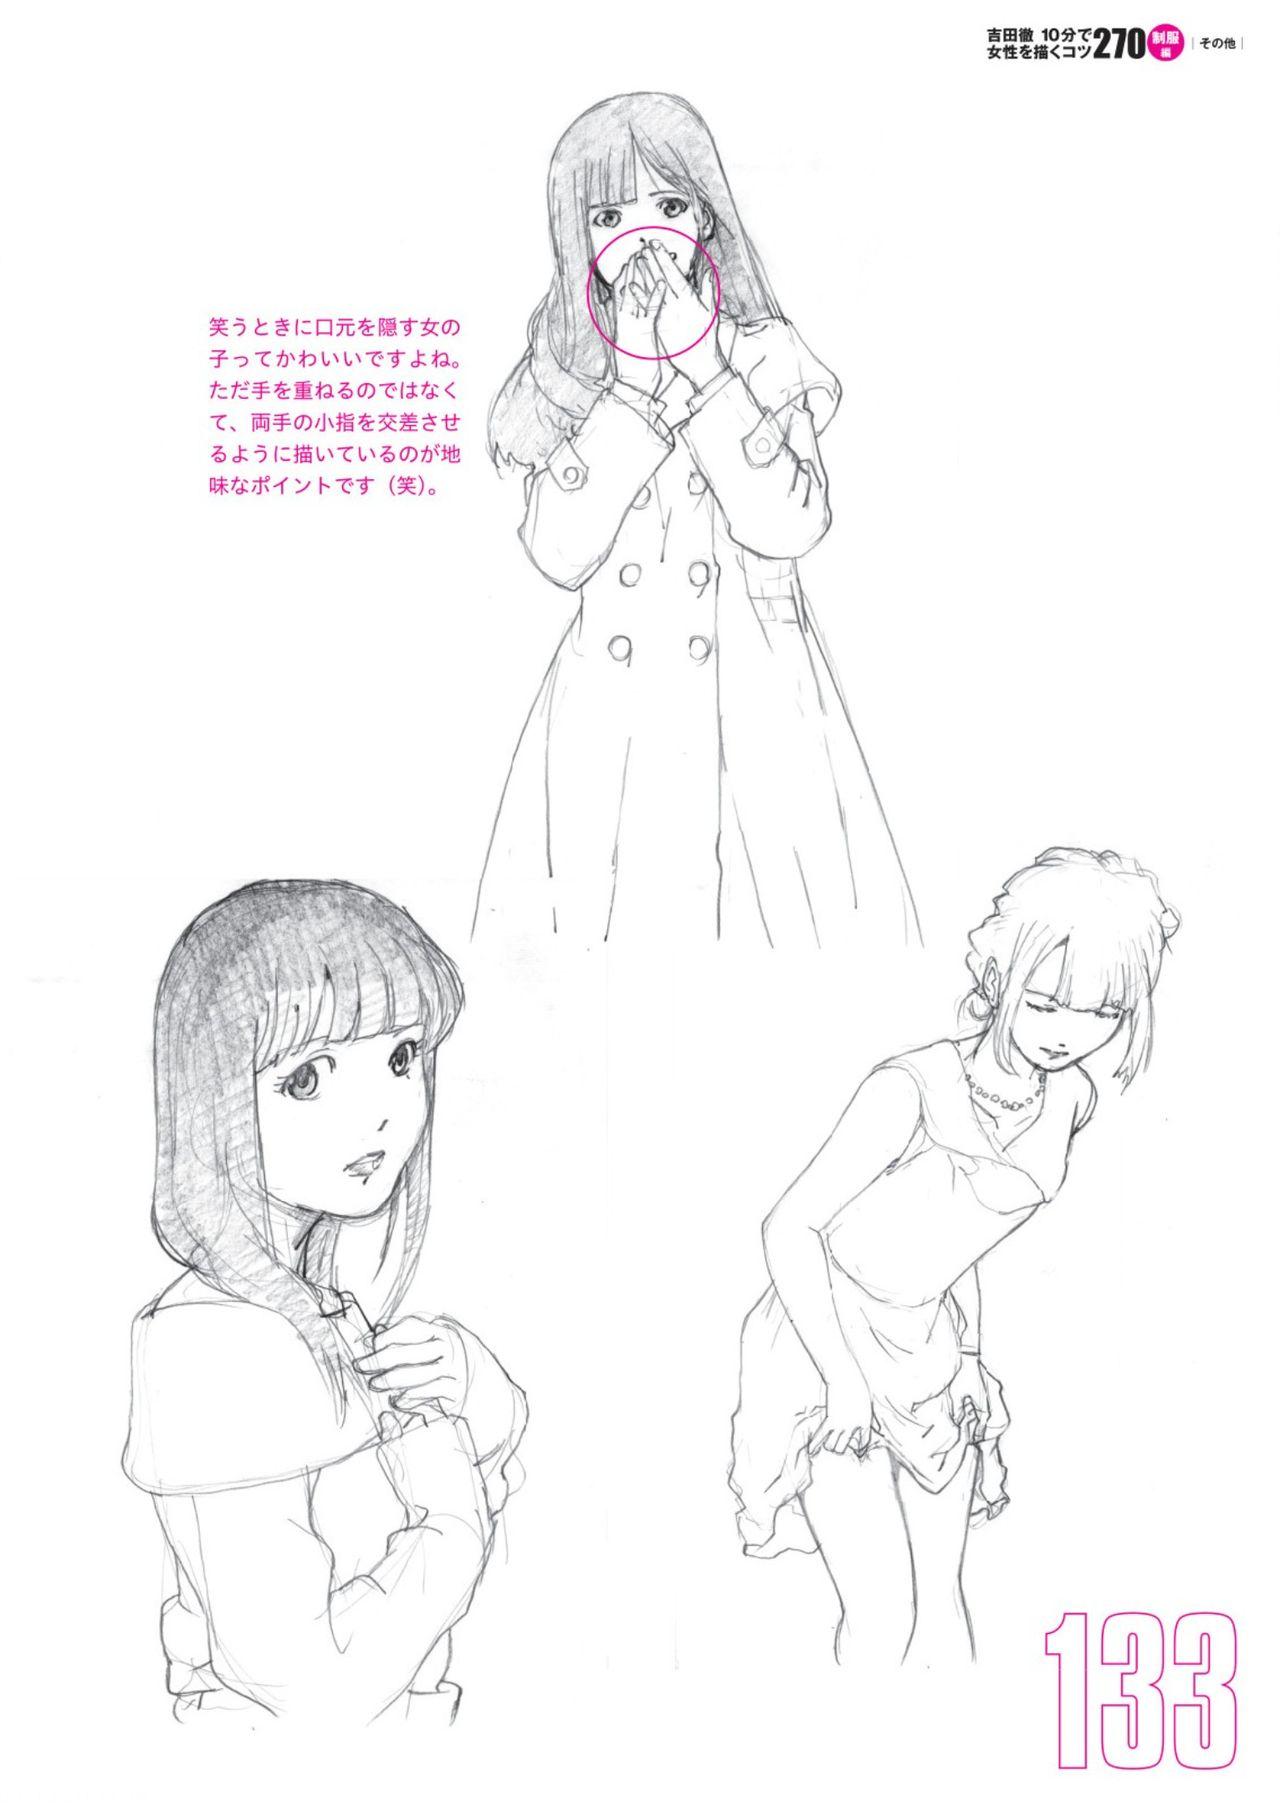 Toru Yoshida Tips for drawing women in 10 minutes 270 Uniforms 134